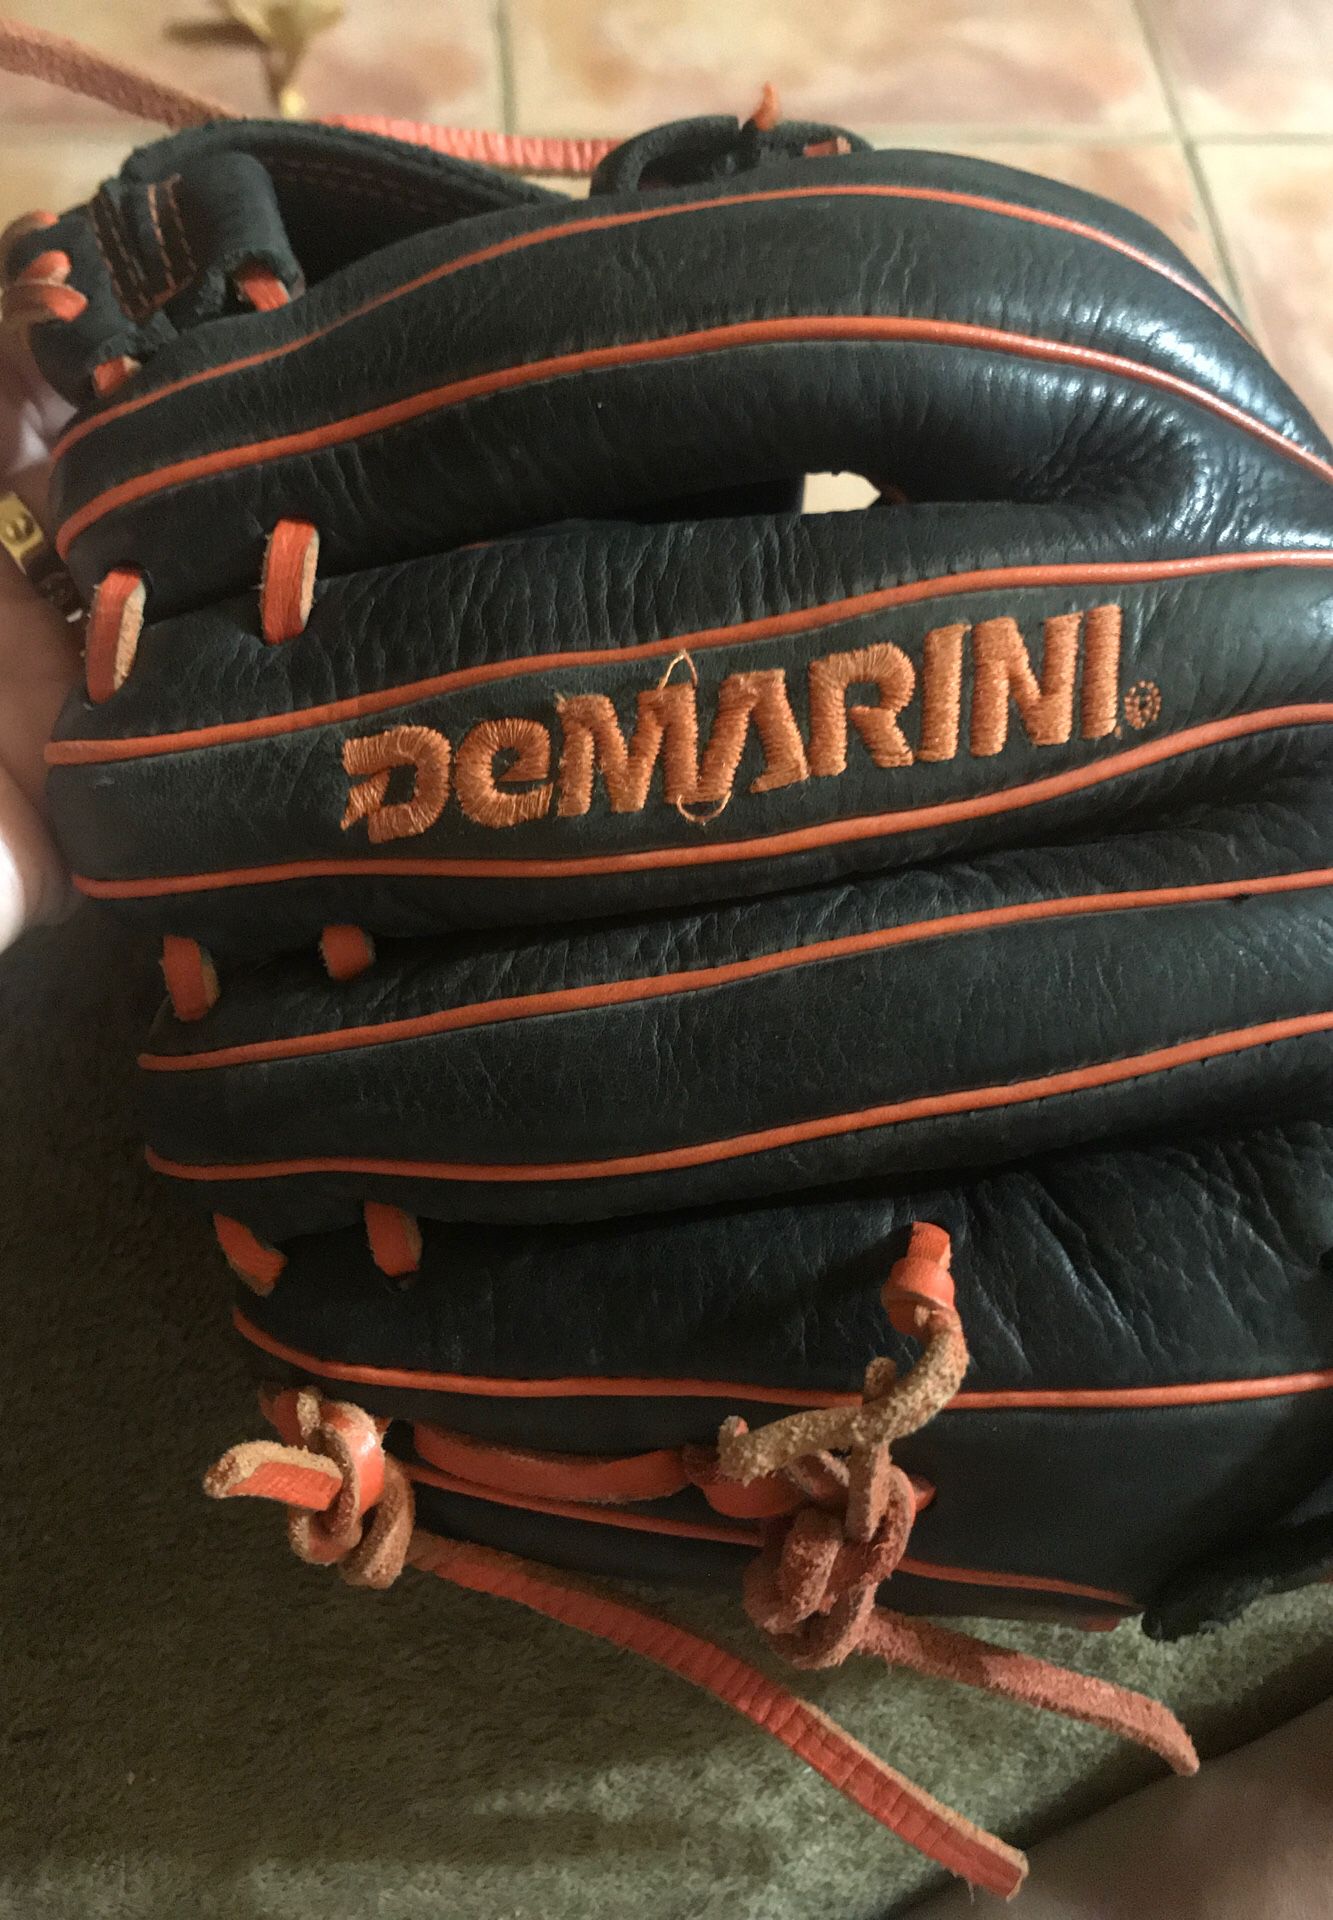 Demarini baseball glove $32pre-owned